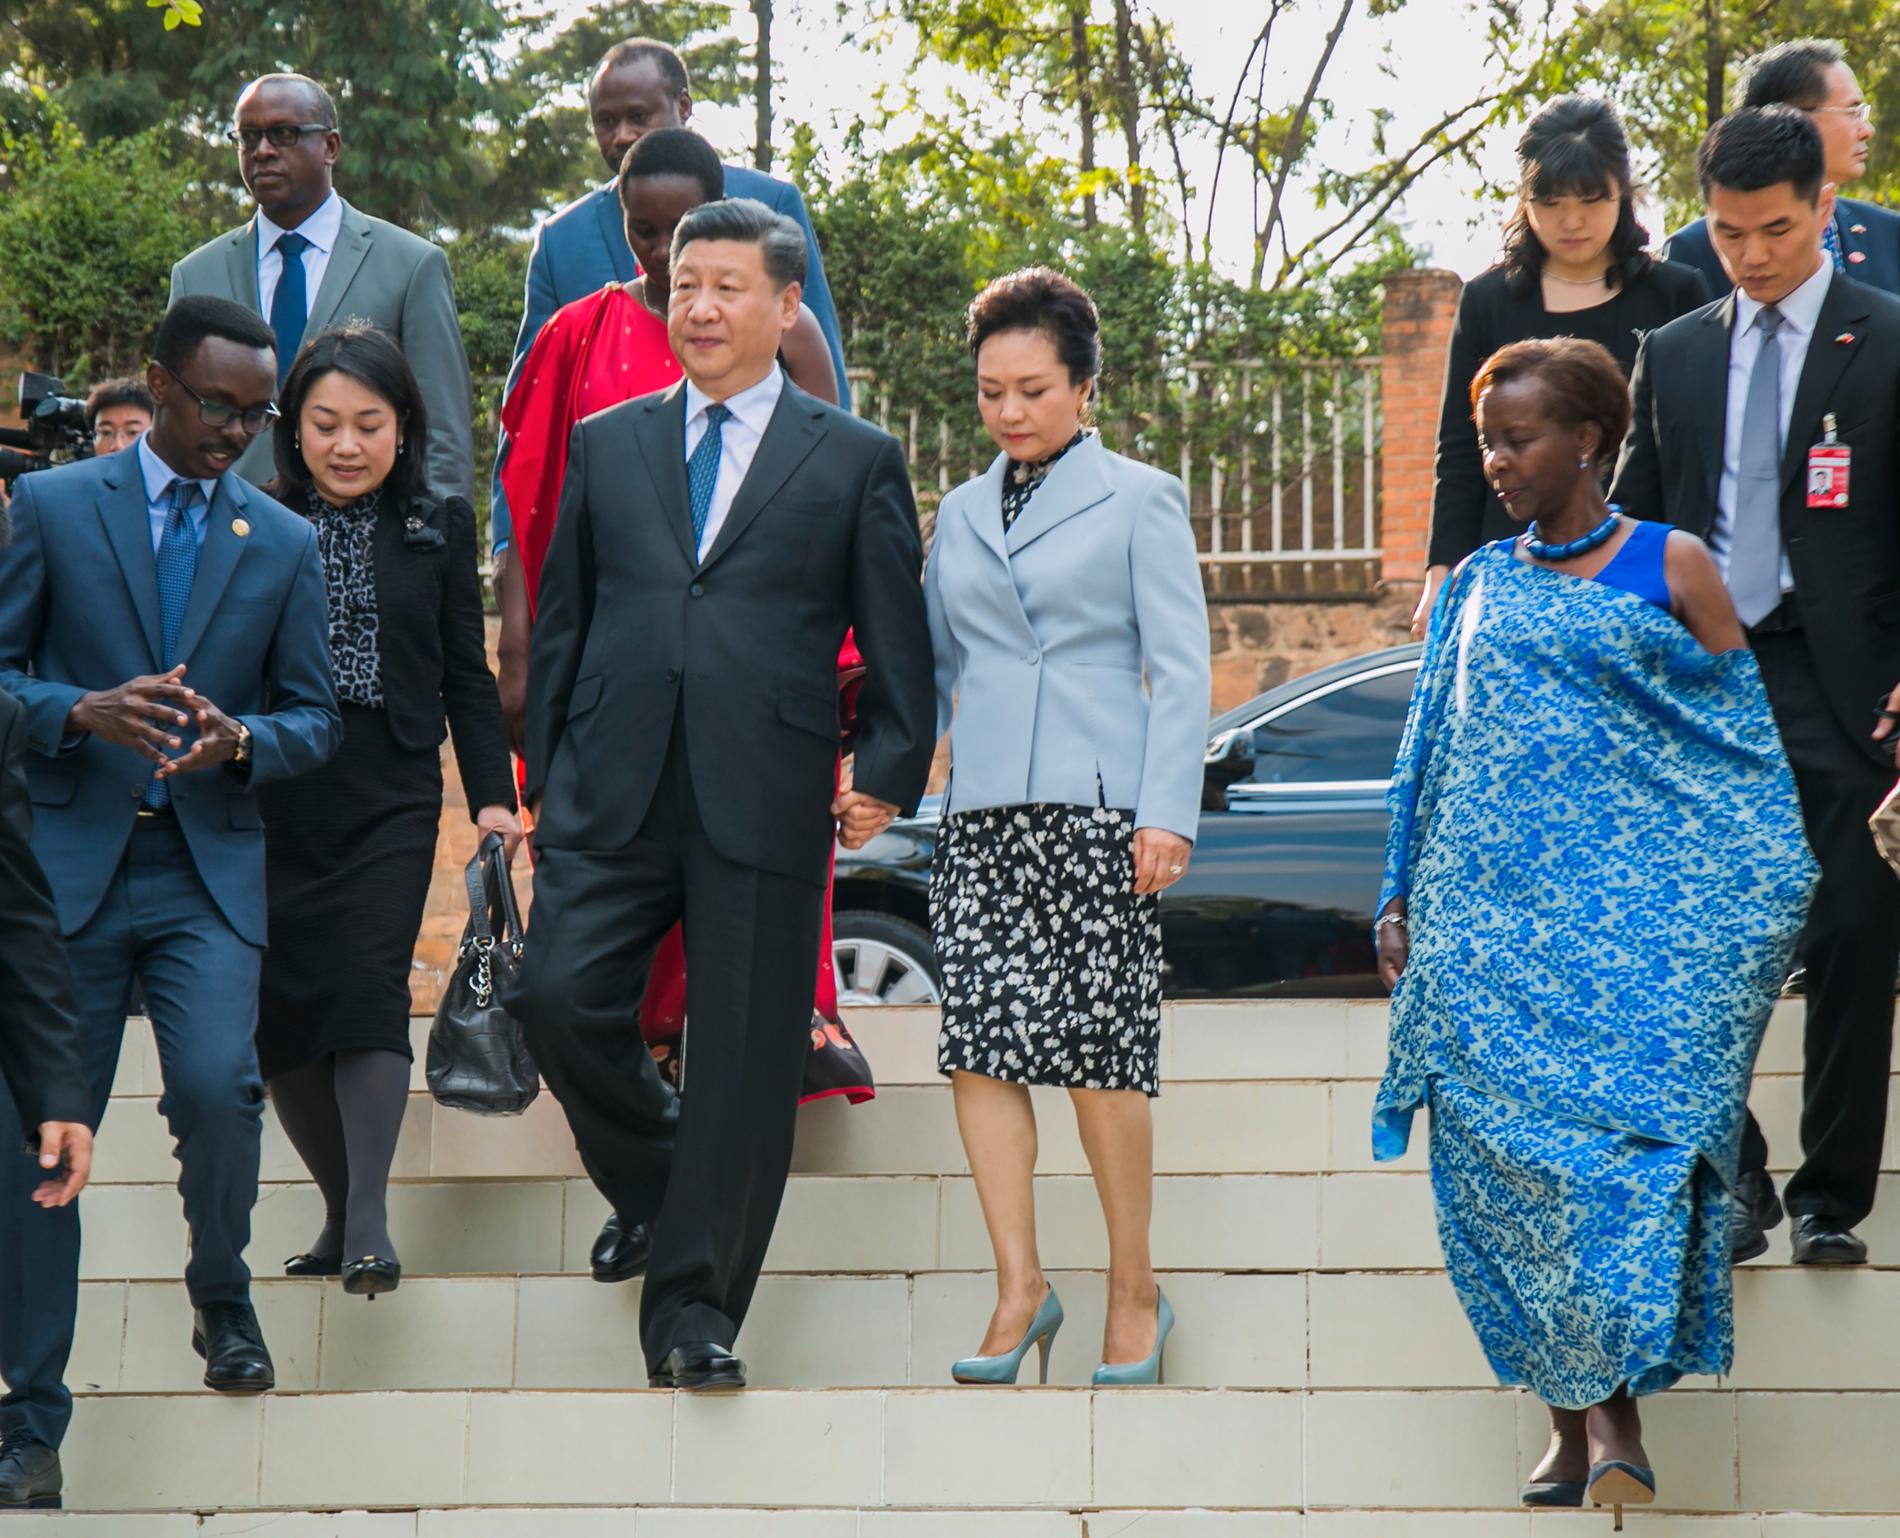 Kinas ledare Xi Jinping och hans fru Peng Liyuan går tillsammans med Rwandas utrikesminister Louise Mushikiwabo i huvudstaden Kigali sommaren 2018, i samband med att Kina utlovat 126 miljoner dollar, drygt en miljard kronor, i investeringar i Rwanda. Arkivbild.